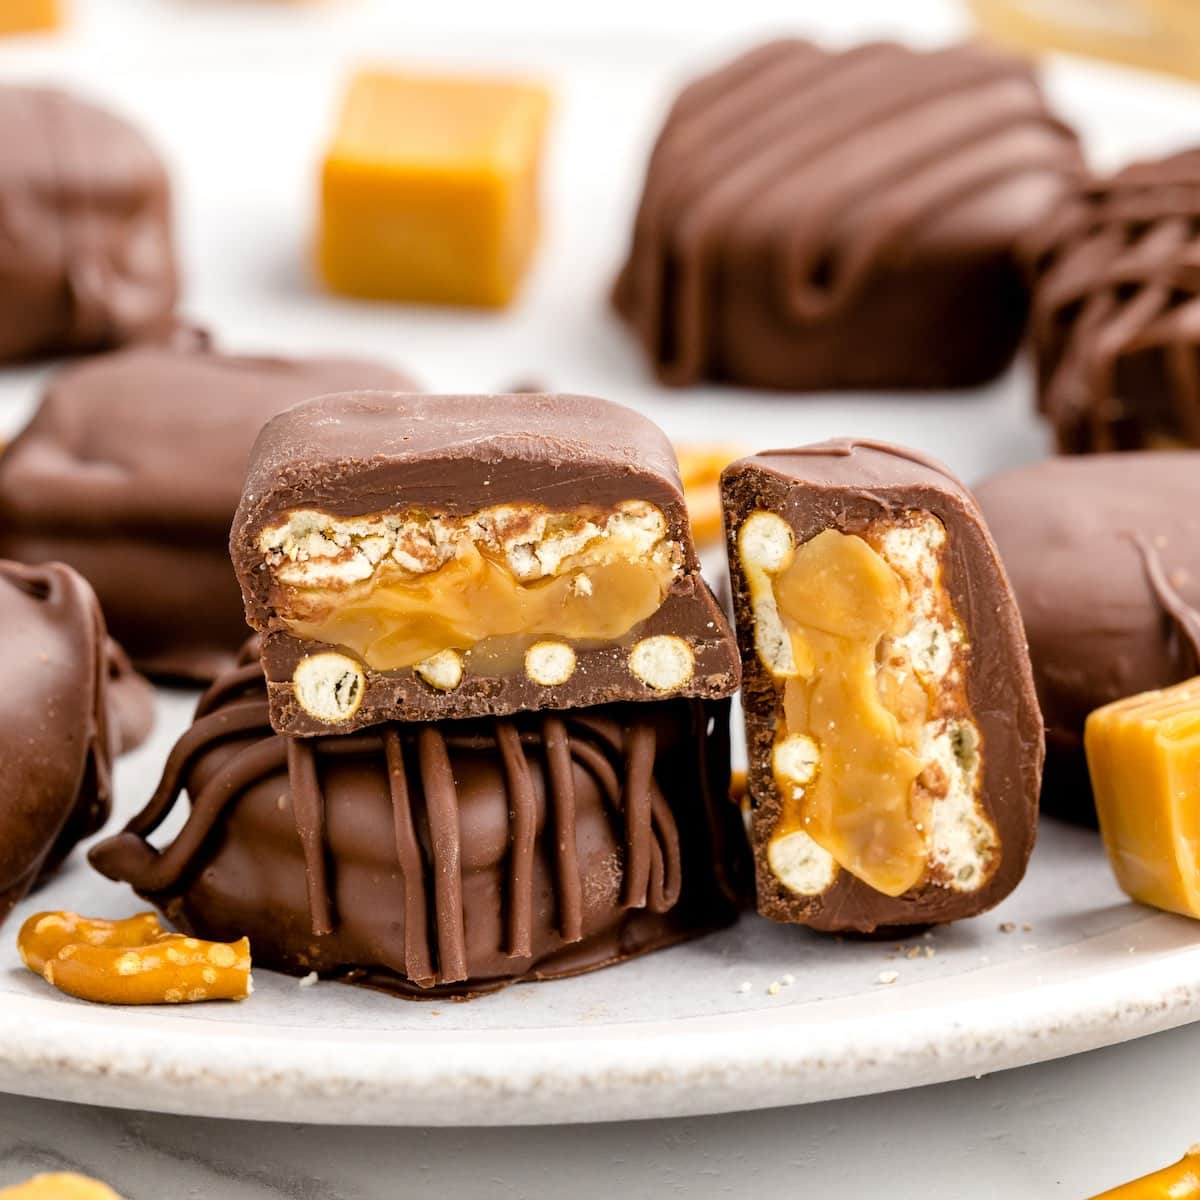 Hershey's Gold Peanuts & Pretzels Candy Bar Copycat Recipe